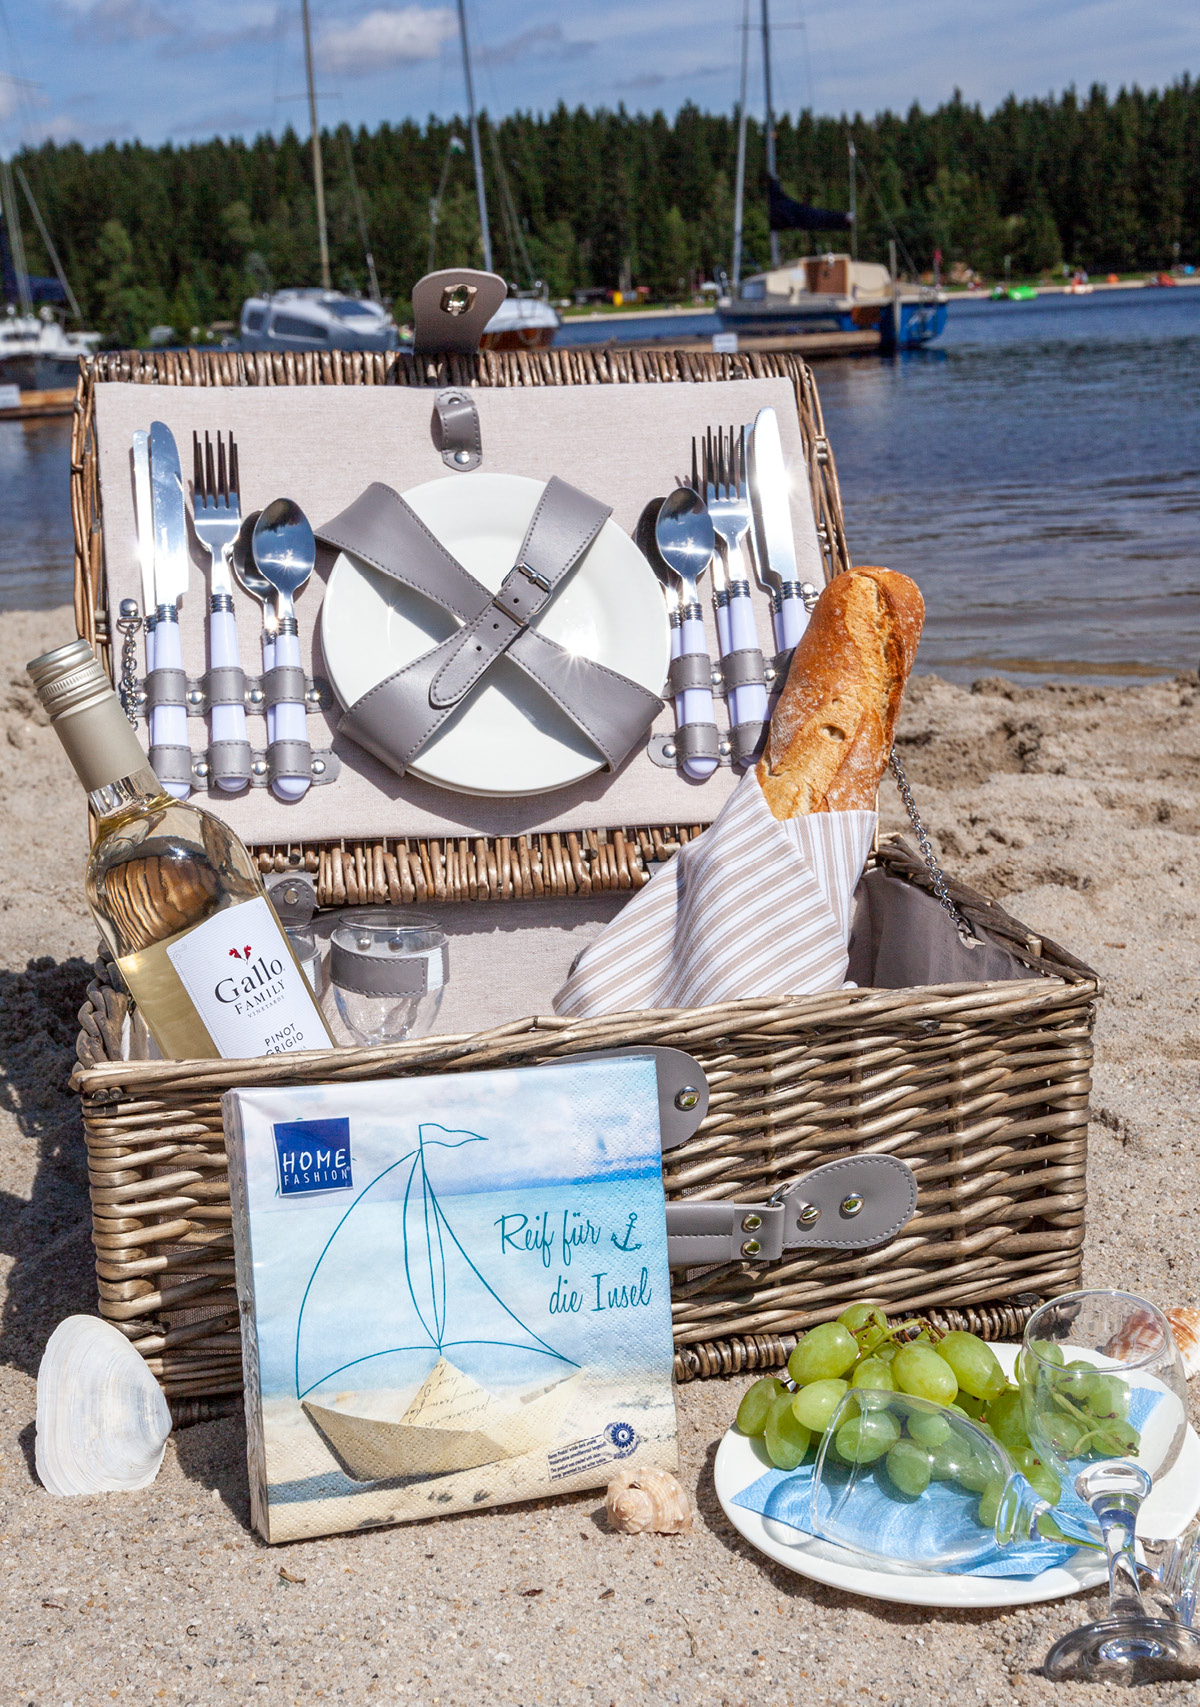 Ein Picknickkorb am Strand, prall gefüllt mit Geschirr, Servietten, Baguette, Trauben usw. verspicht einen schönen Nachmittag.